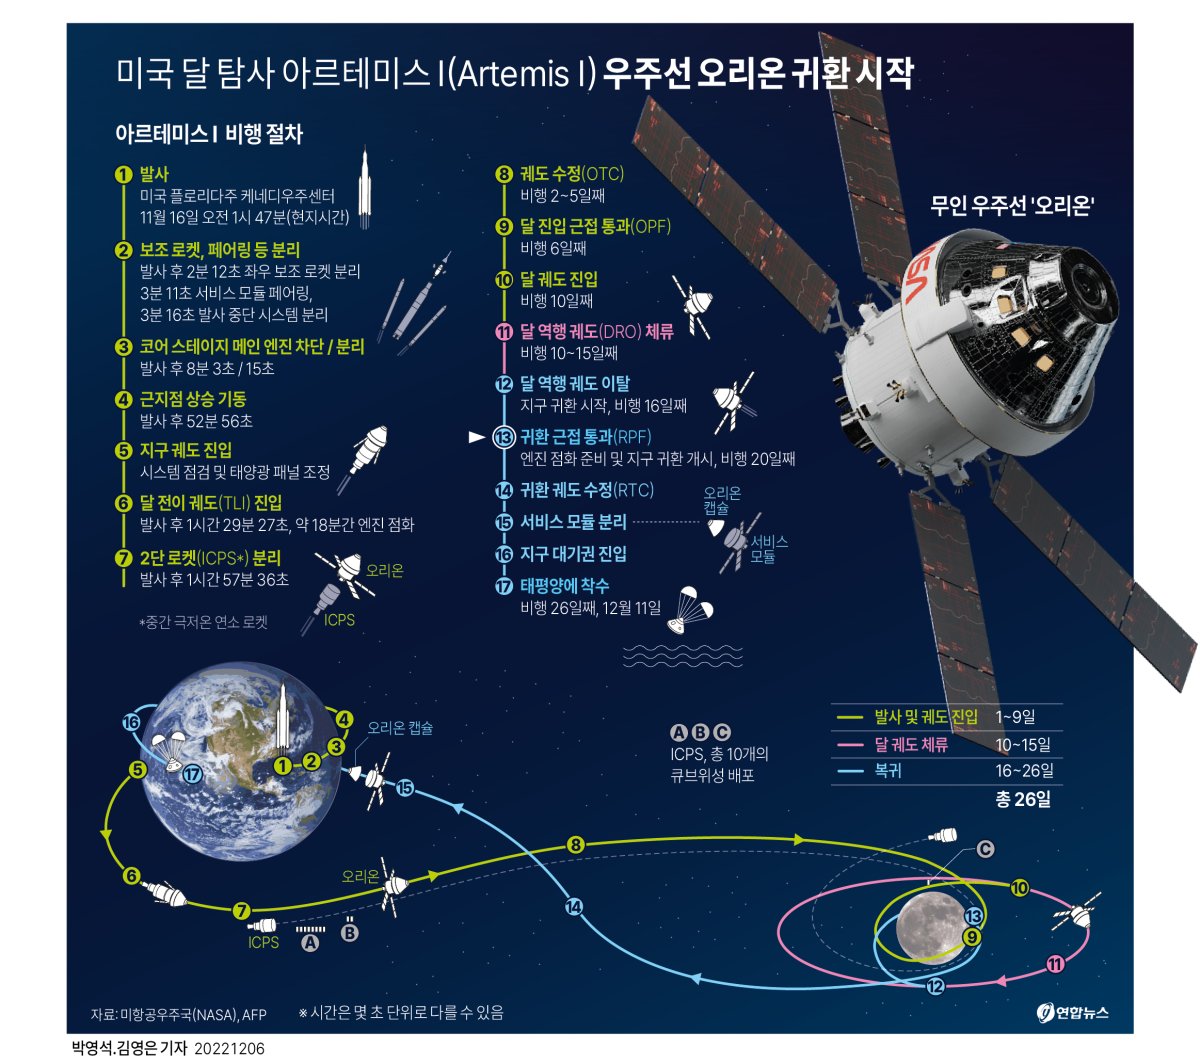 [그래픽] 미국 달 탐사 아르테미스Ⅰ 우주선 오리온 귀환 시작